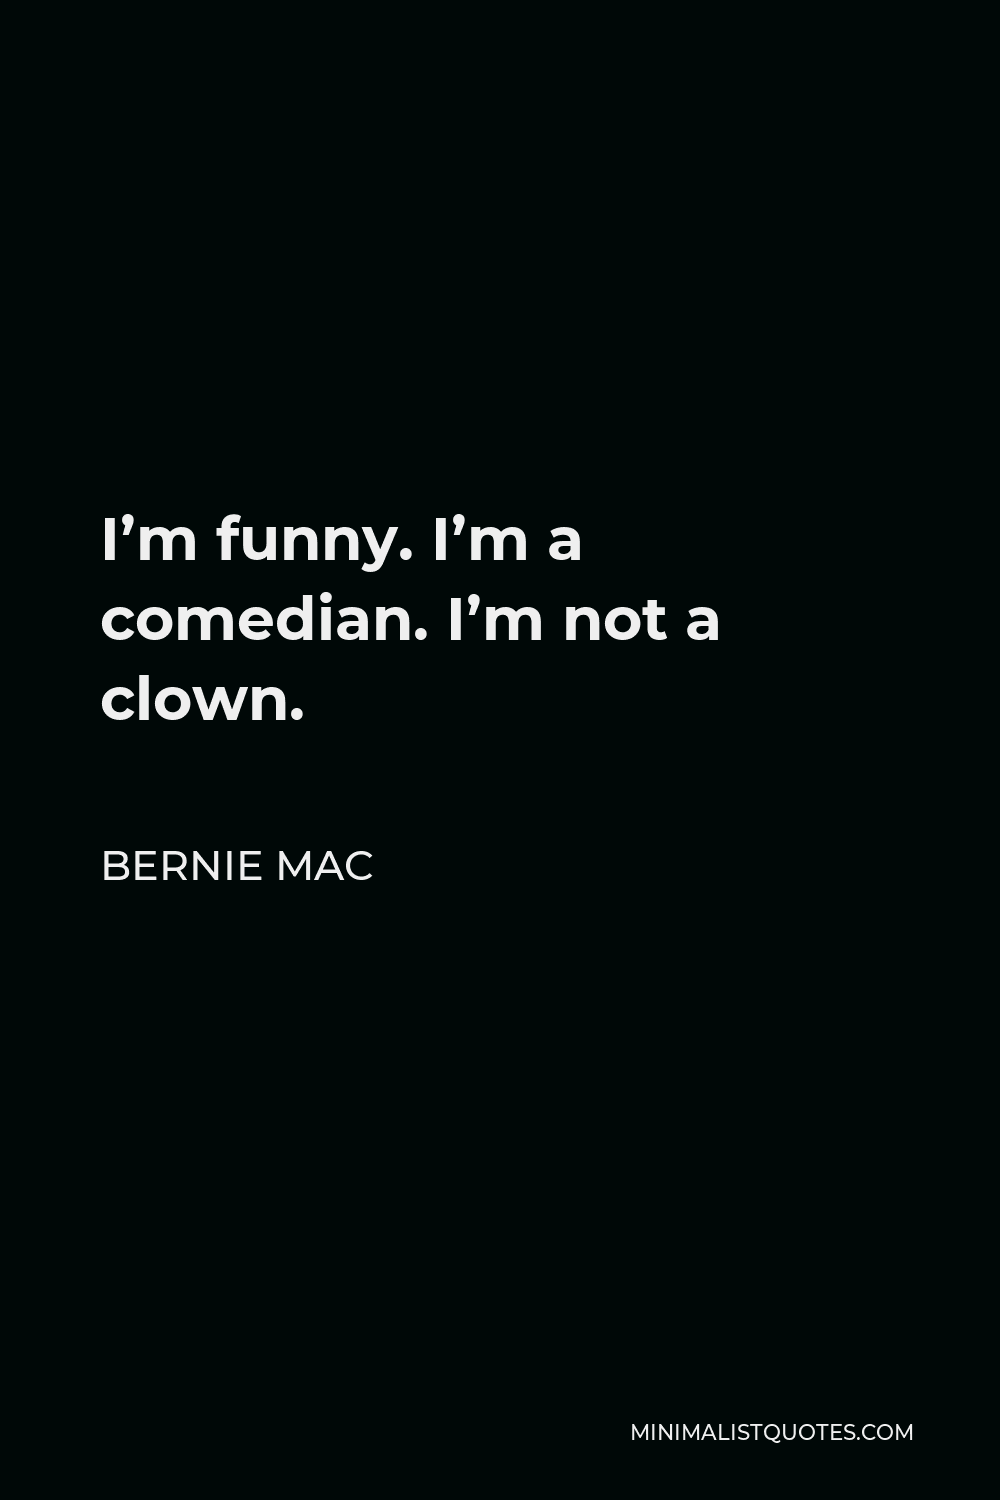 Bernie Mac Quote - I’m funny. I’m a comedian. I’m not a clown.